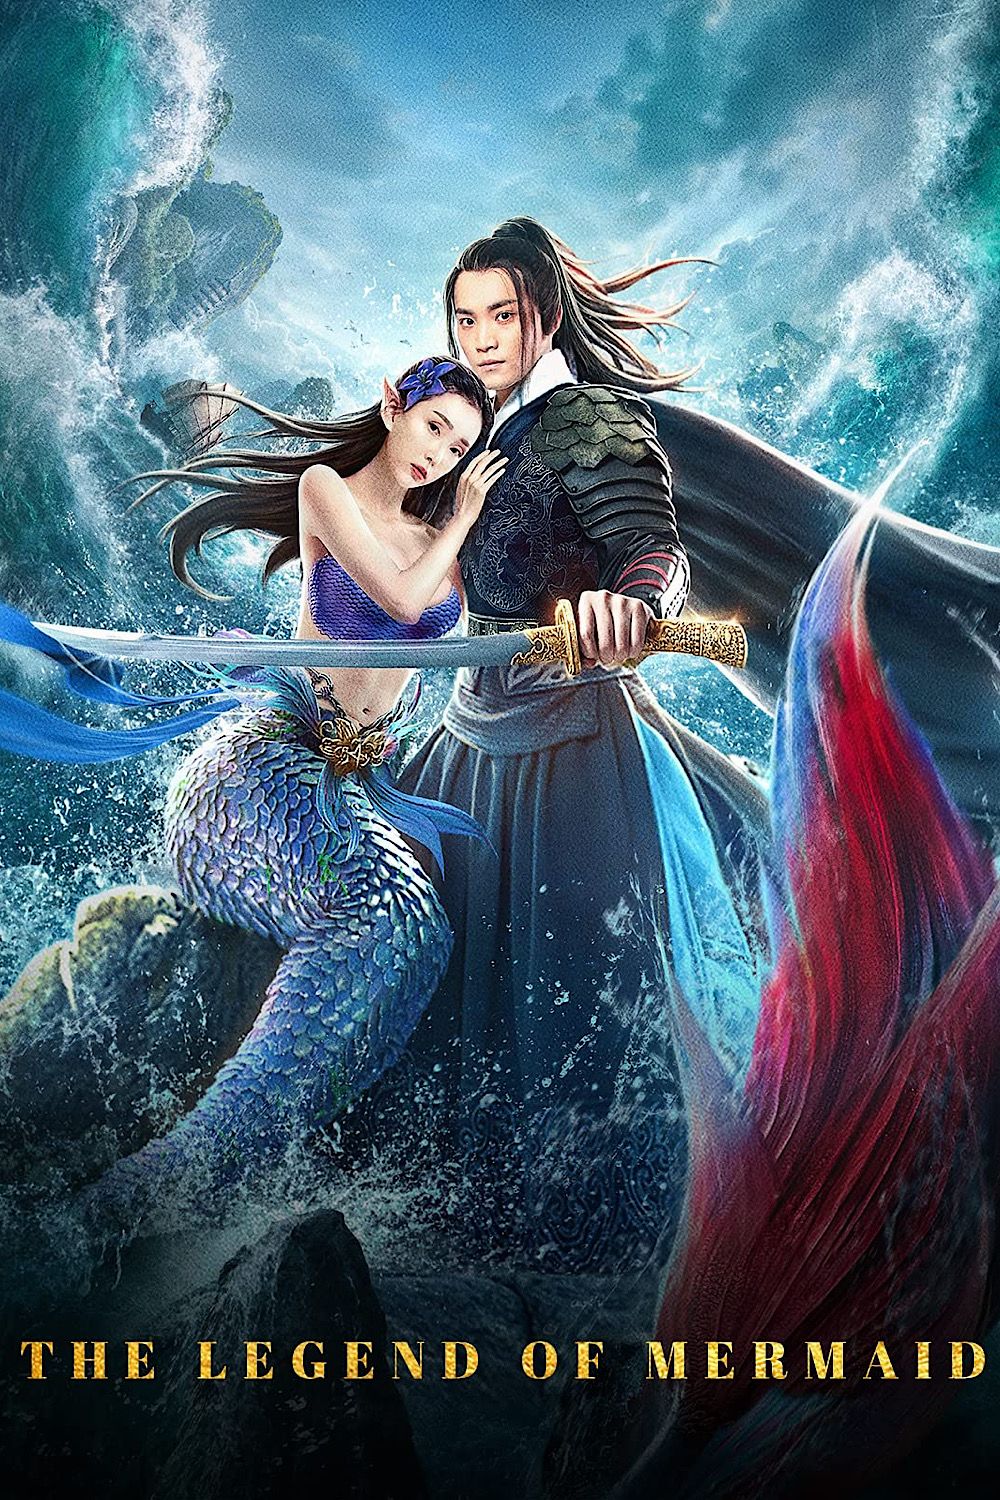 The Legend of Mermaid (2020) Hindi Dubbed Full Movie